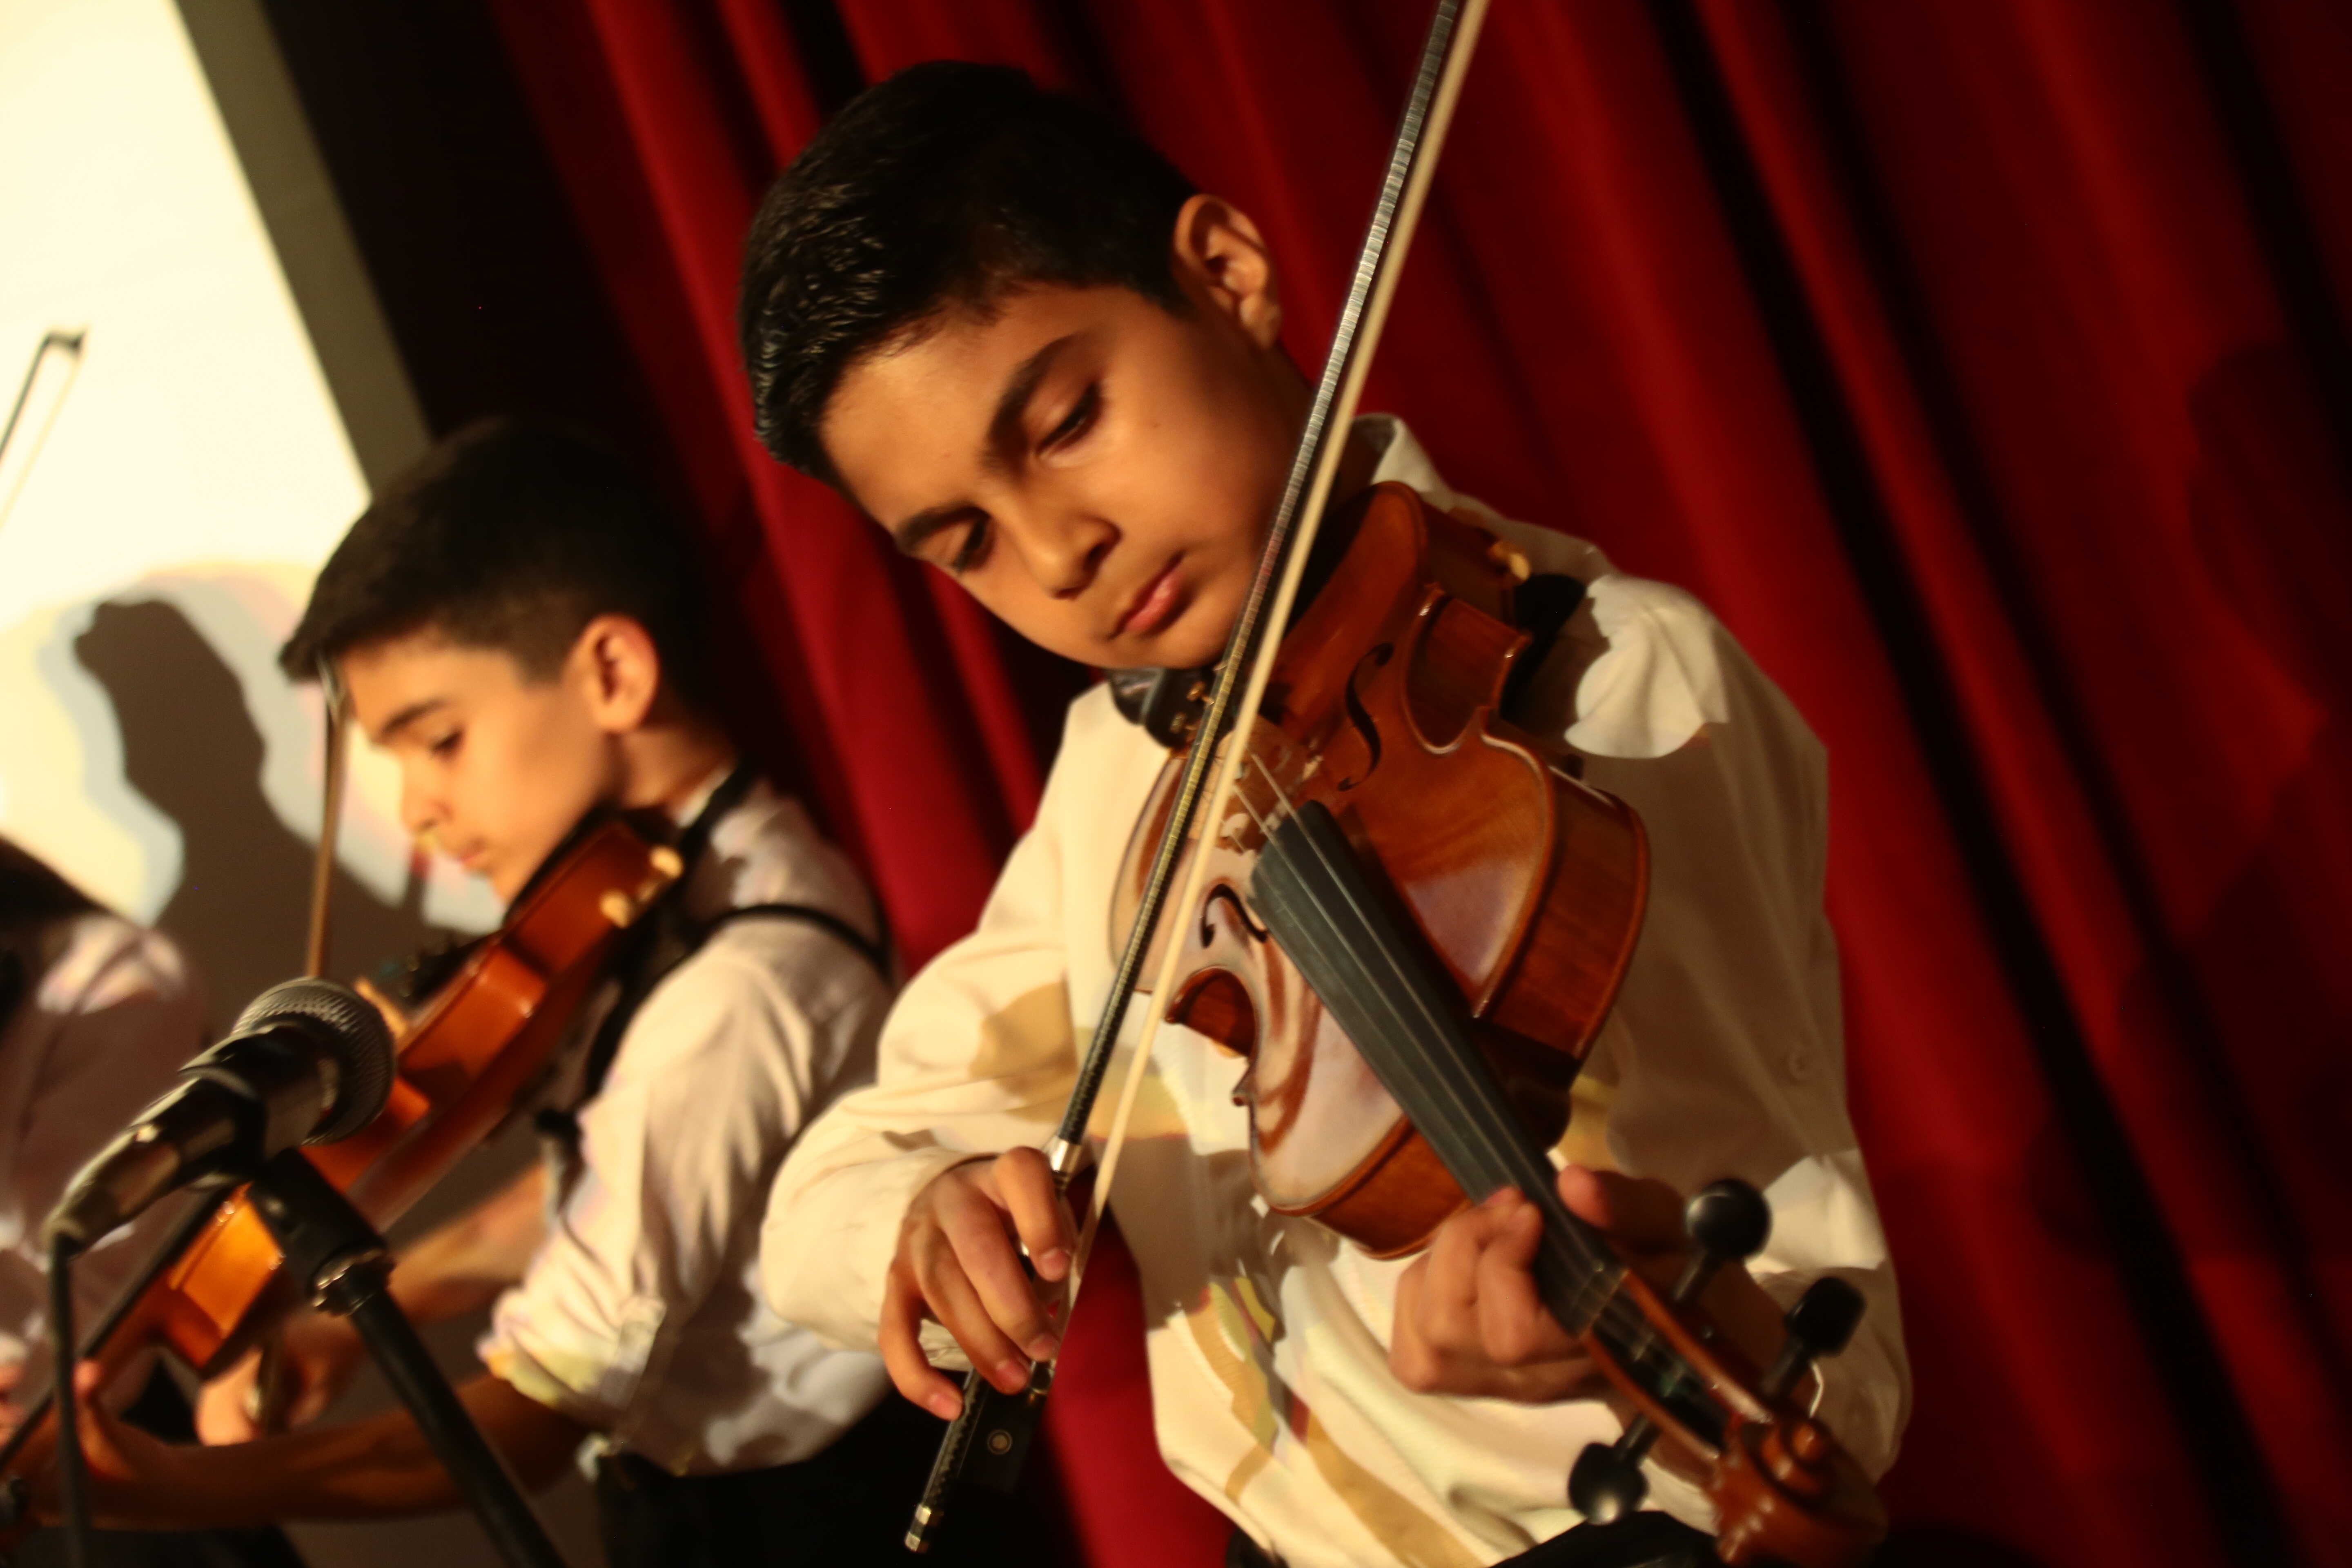 استعداد یابی و آموزش کودکان 3تا 8 سال برای ارکستر داخلی و خارجی  همه روزه در آموزشگاه موسیقی اردیبهشت